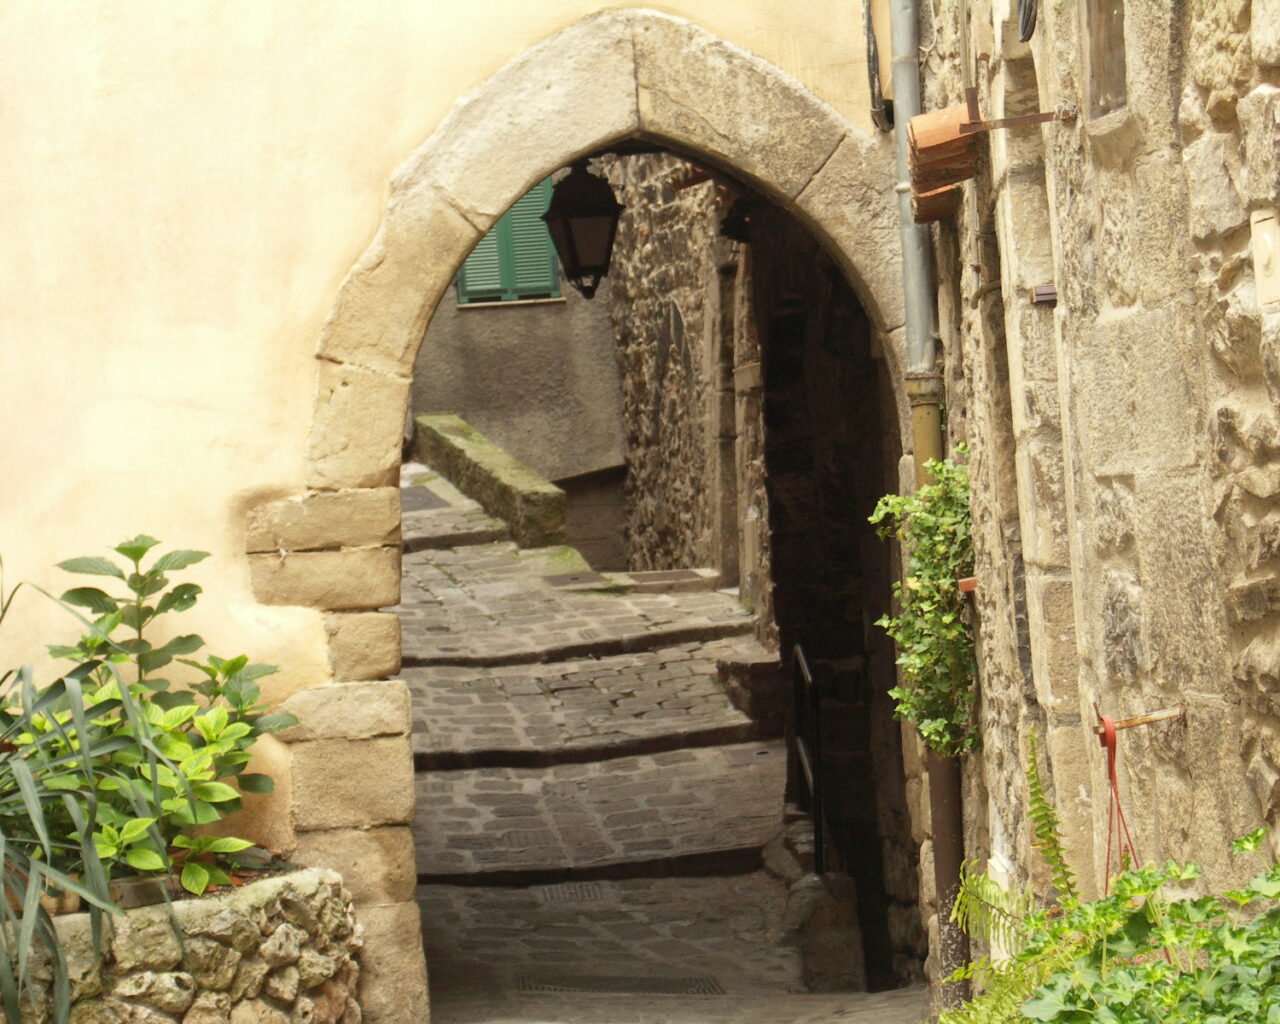 03 Arche et passage voûtés avec de petits escaliers